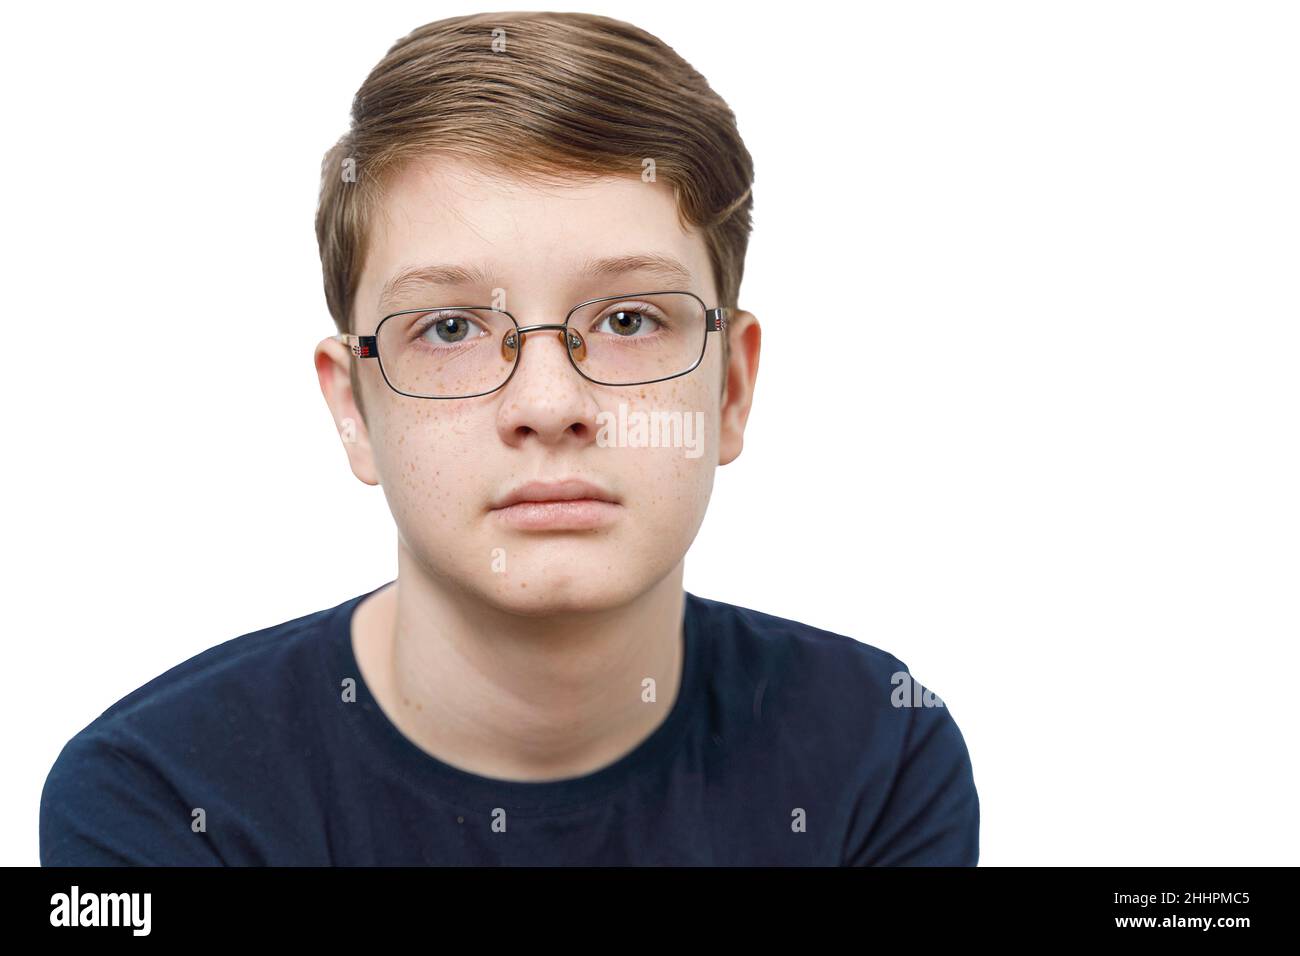 Ragazzo adolescente con greckle sul viso con occhiali classici, isolato su sfondo bianco. Concetto di persone sane. Foto Stock